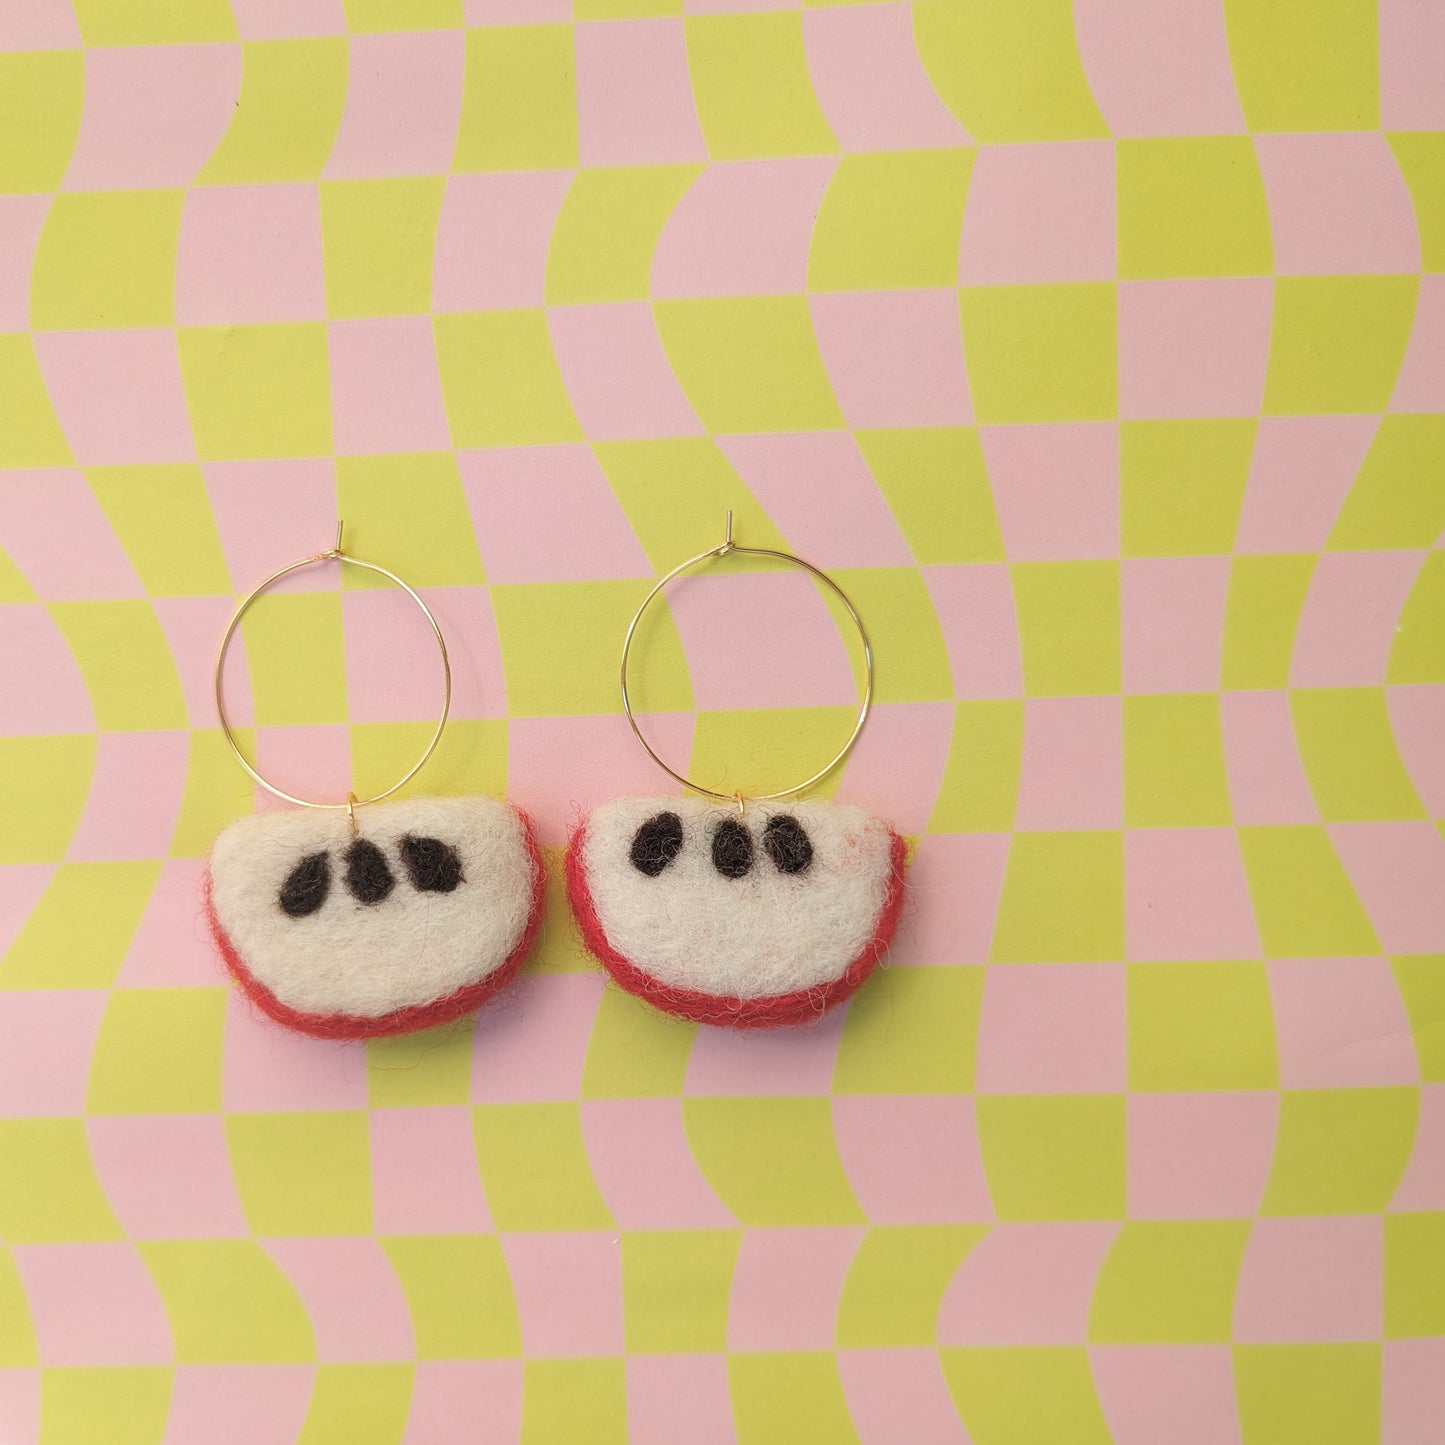 Apple Hoop Earrings